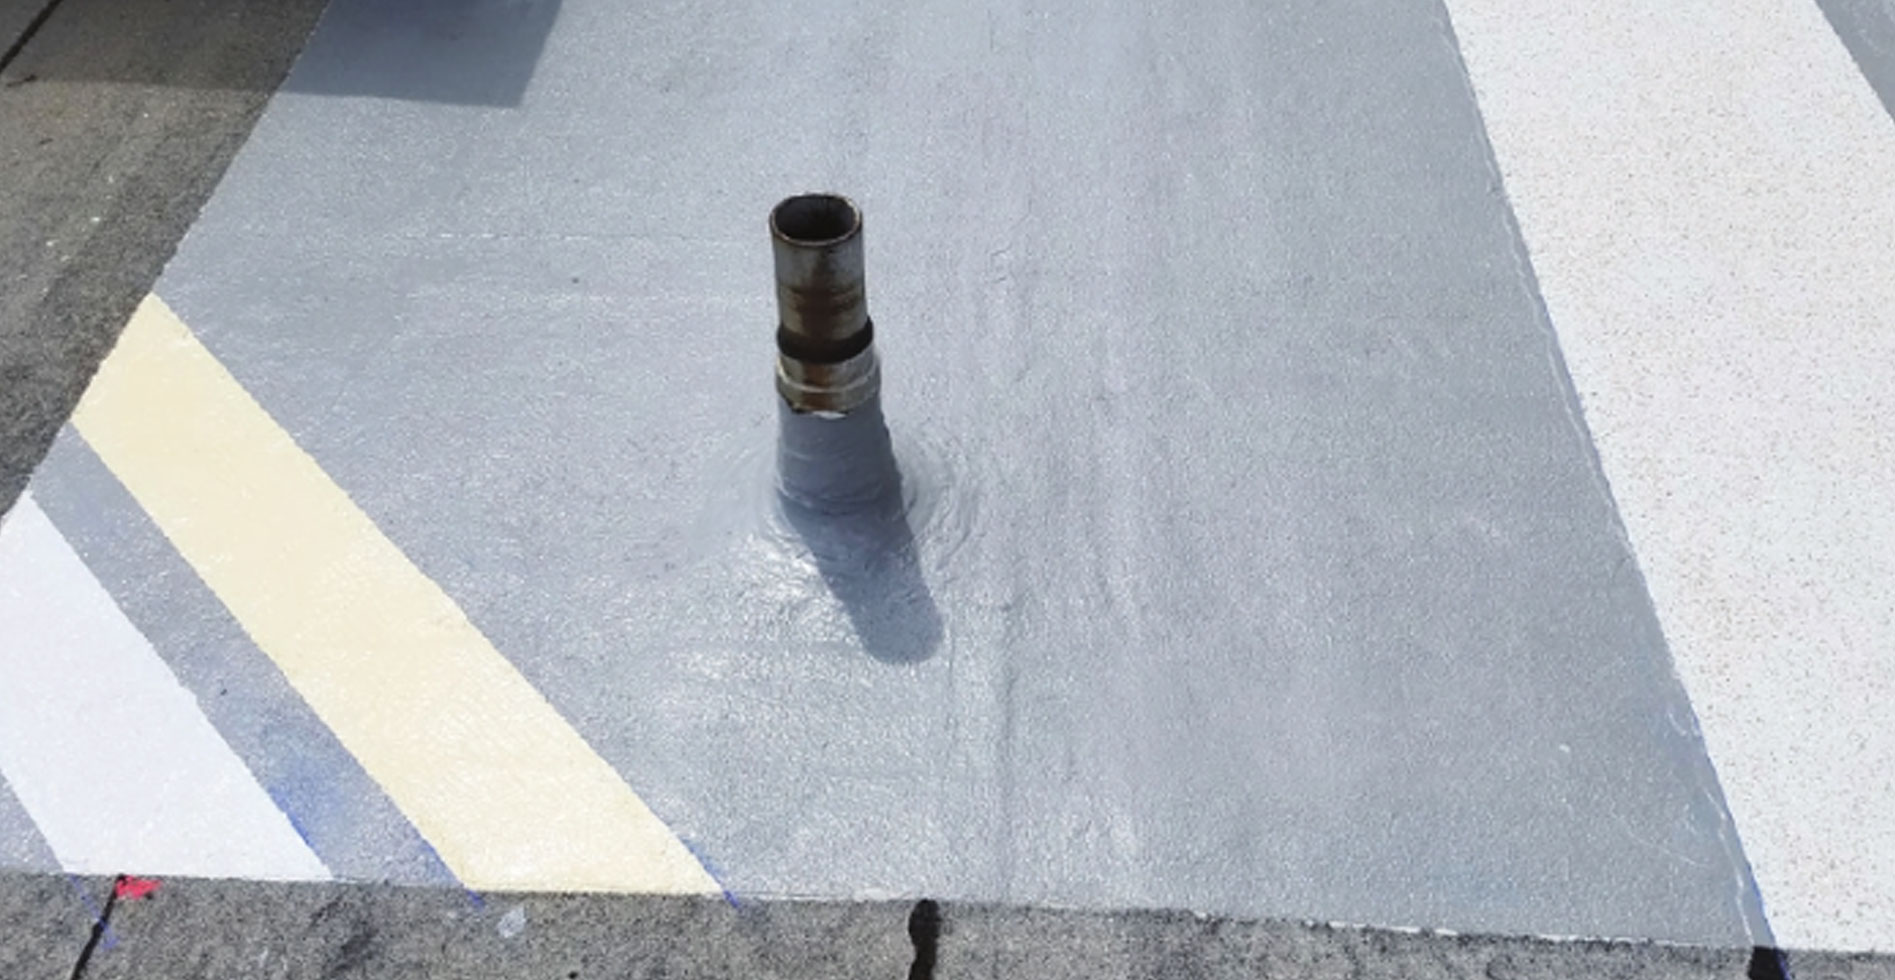 coatings on roof to waterproof